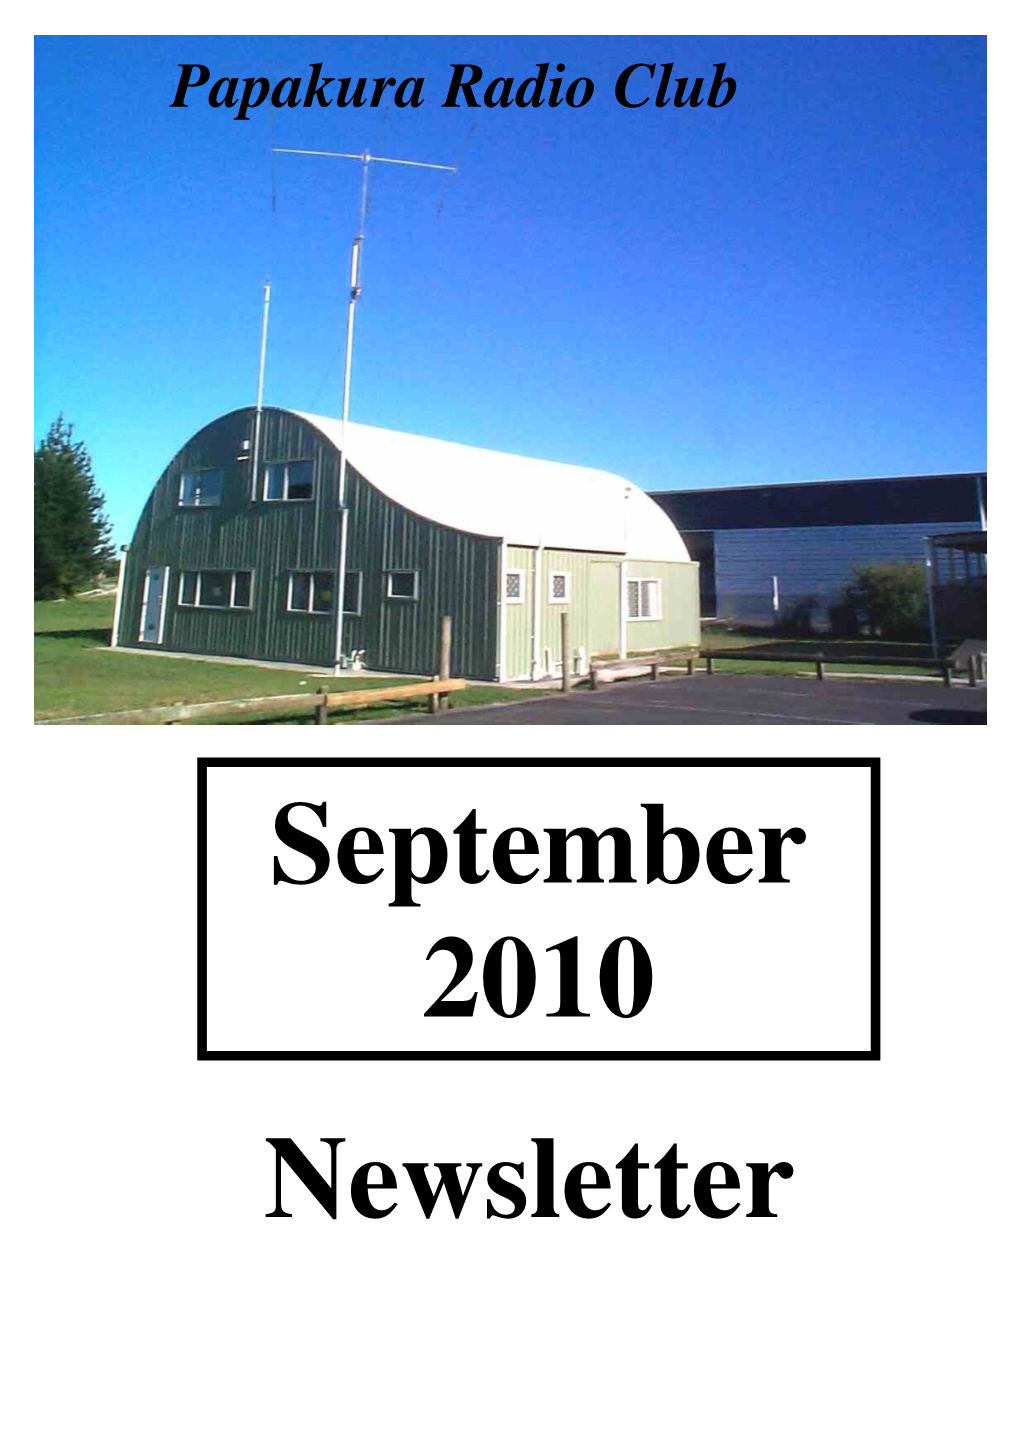 Newsletter September 2010